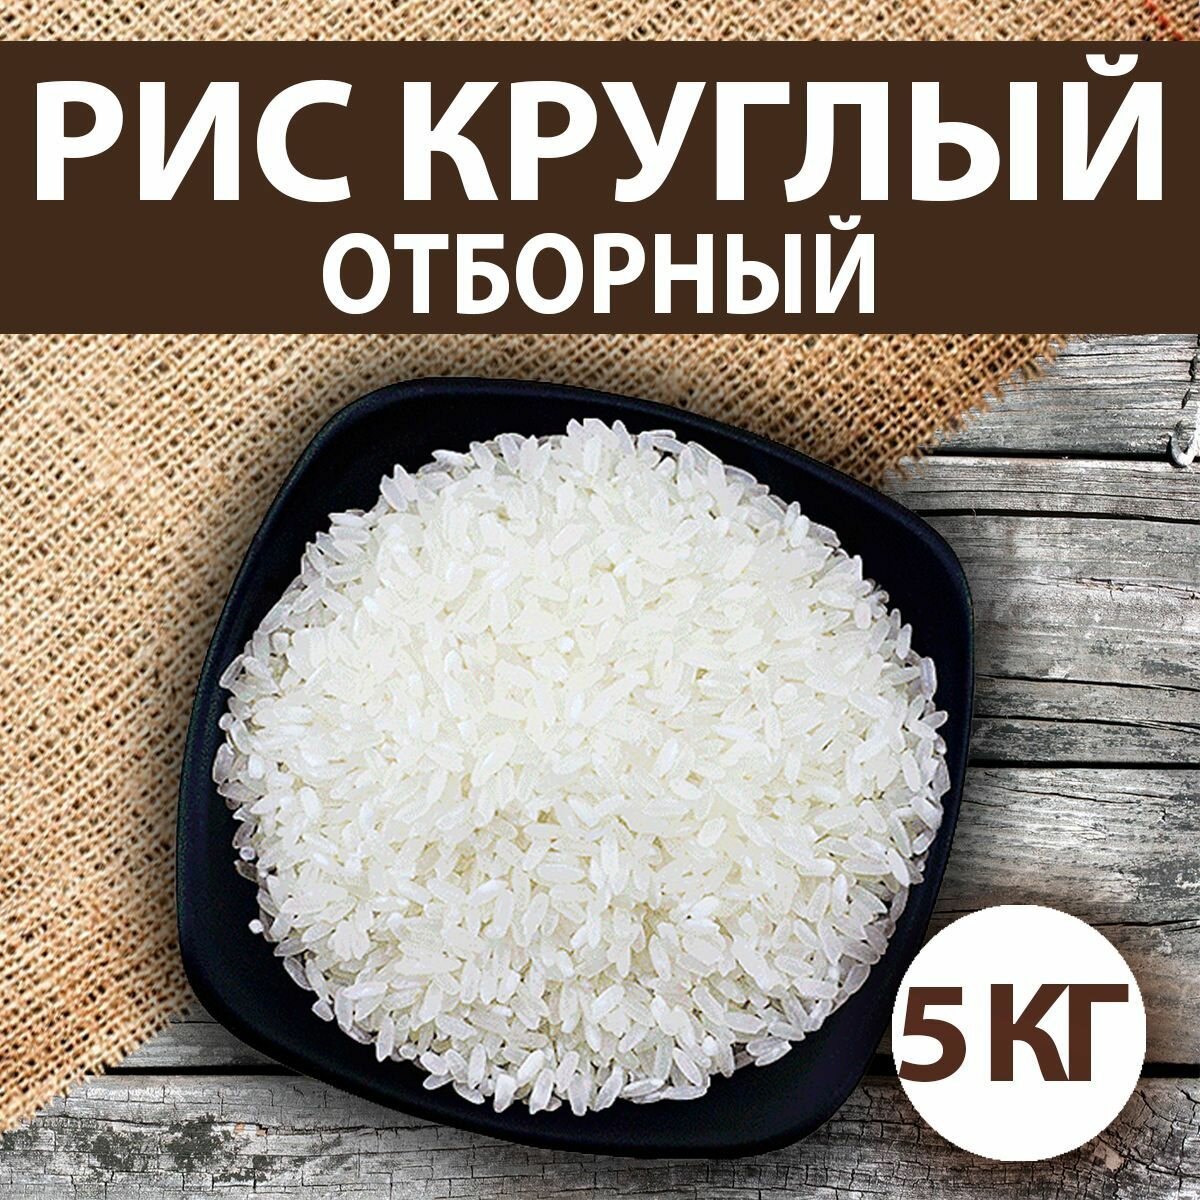 Рис круглый, отборный 5 кг